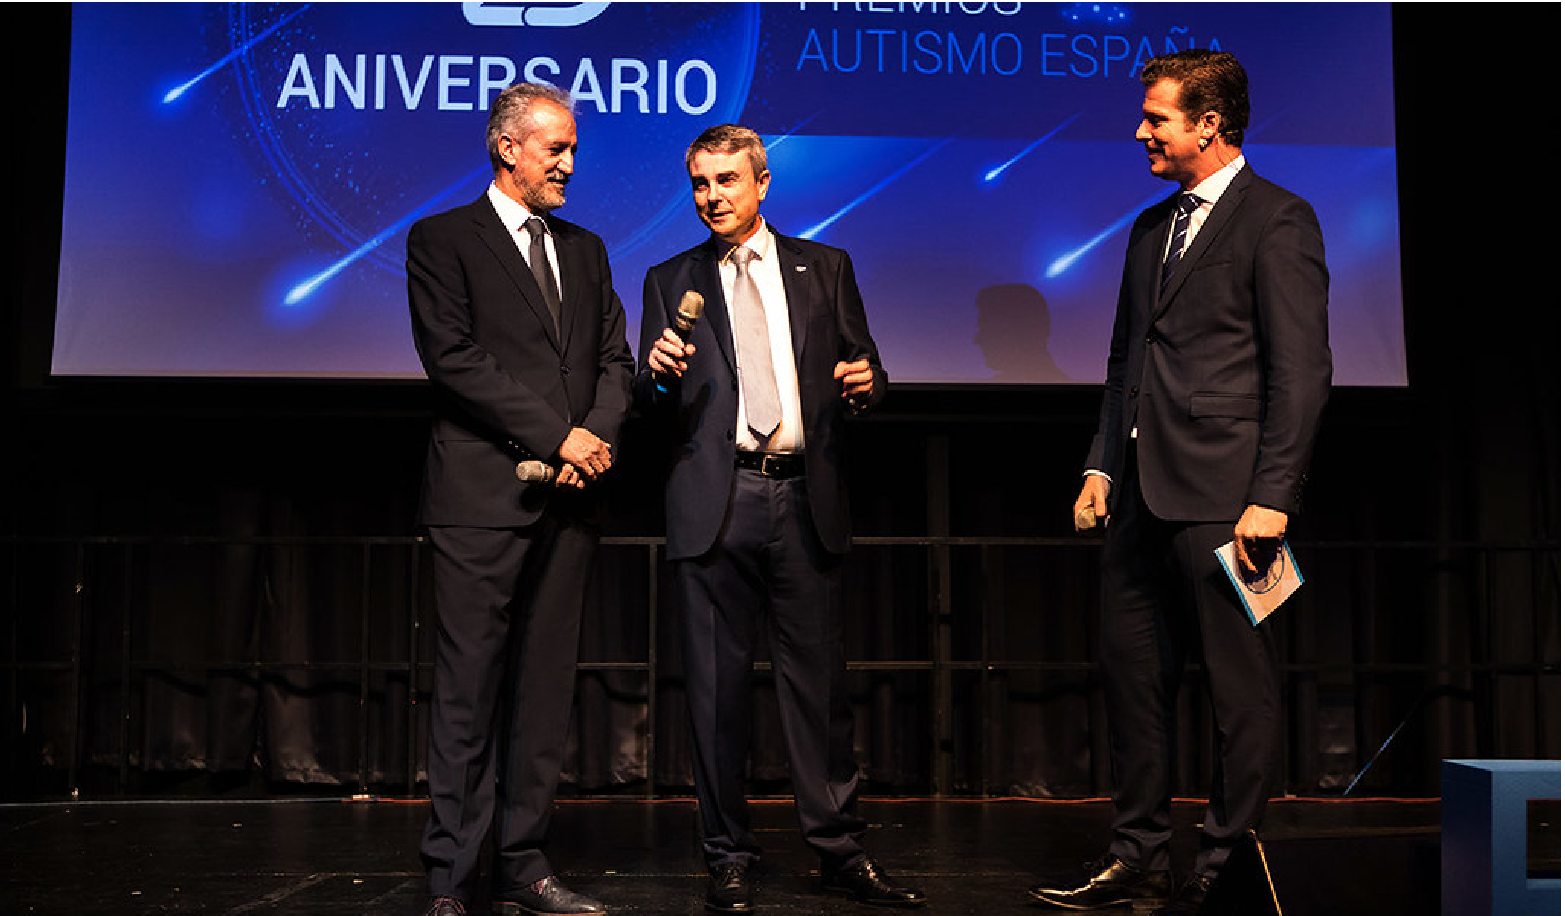 Foto de la gala del 25 aniversario de Autismo España